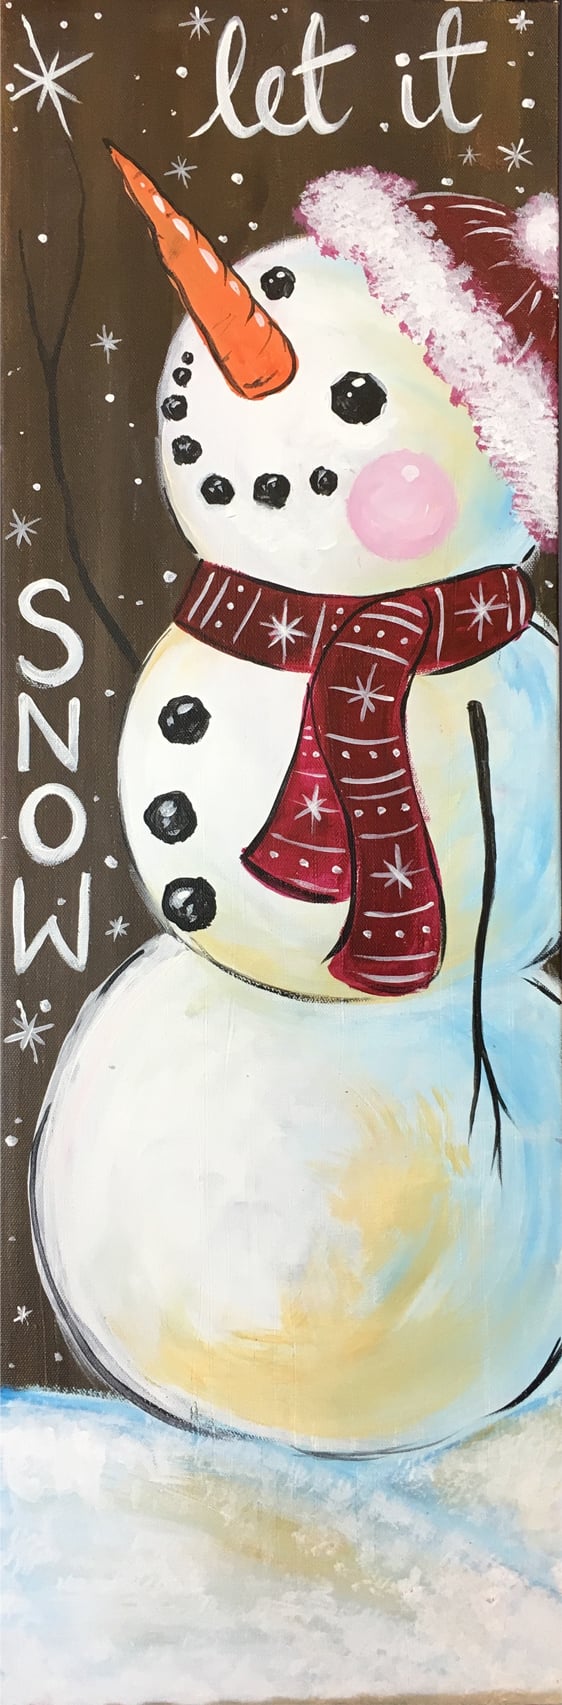 snowmans-wish